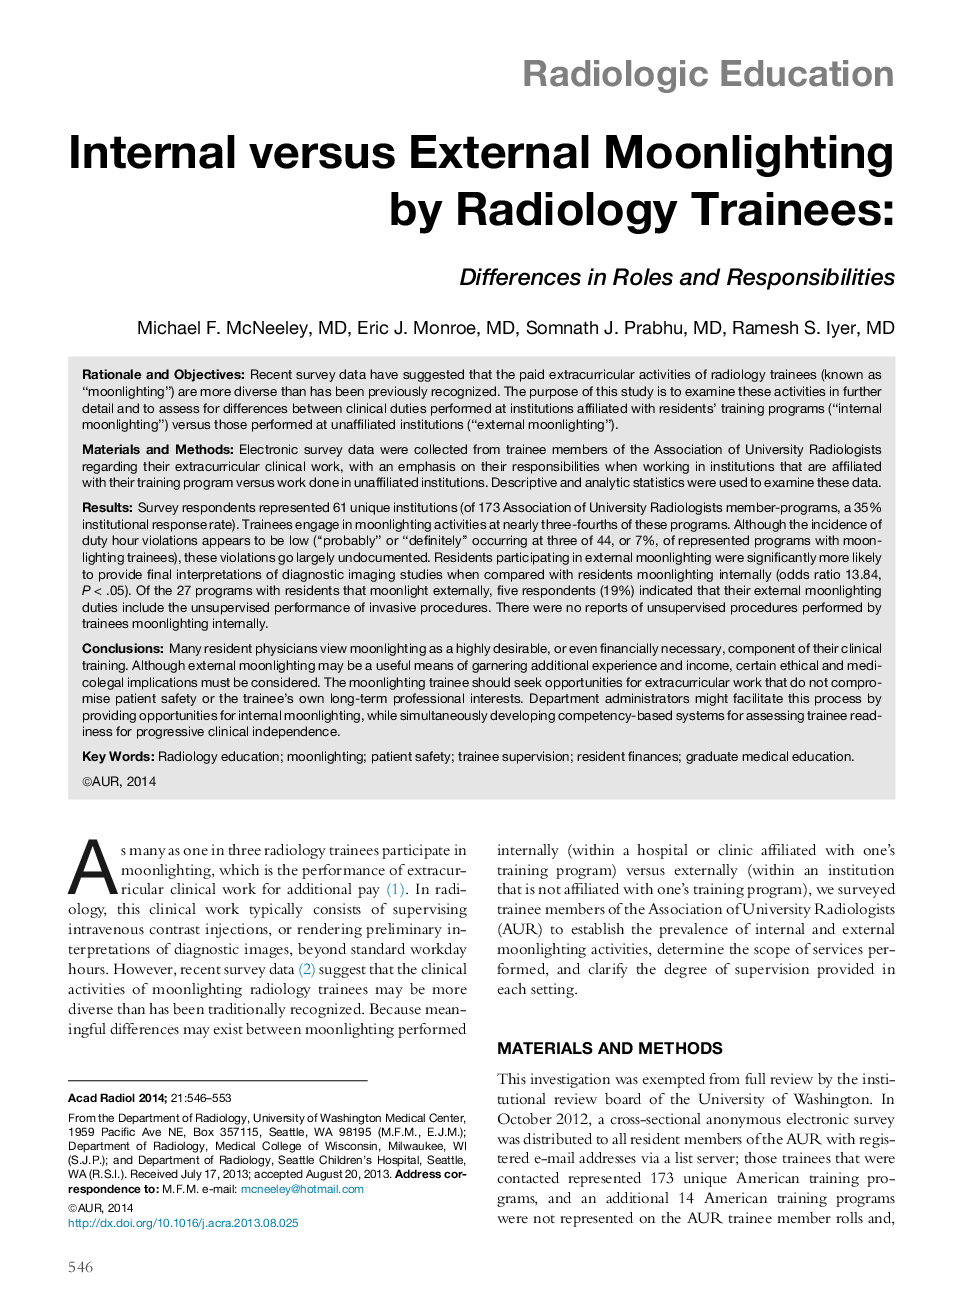 Internal versus External Moonlighting by Radiology Trainees